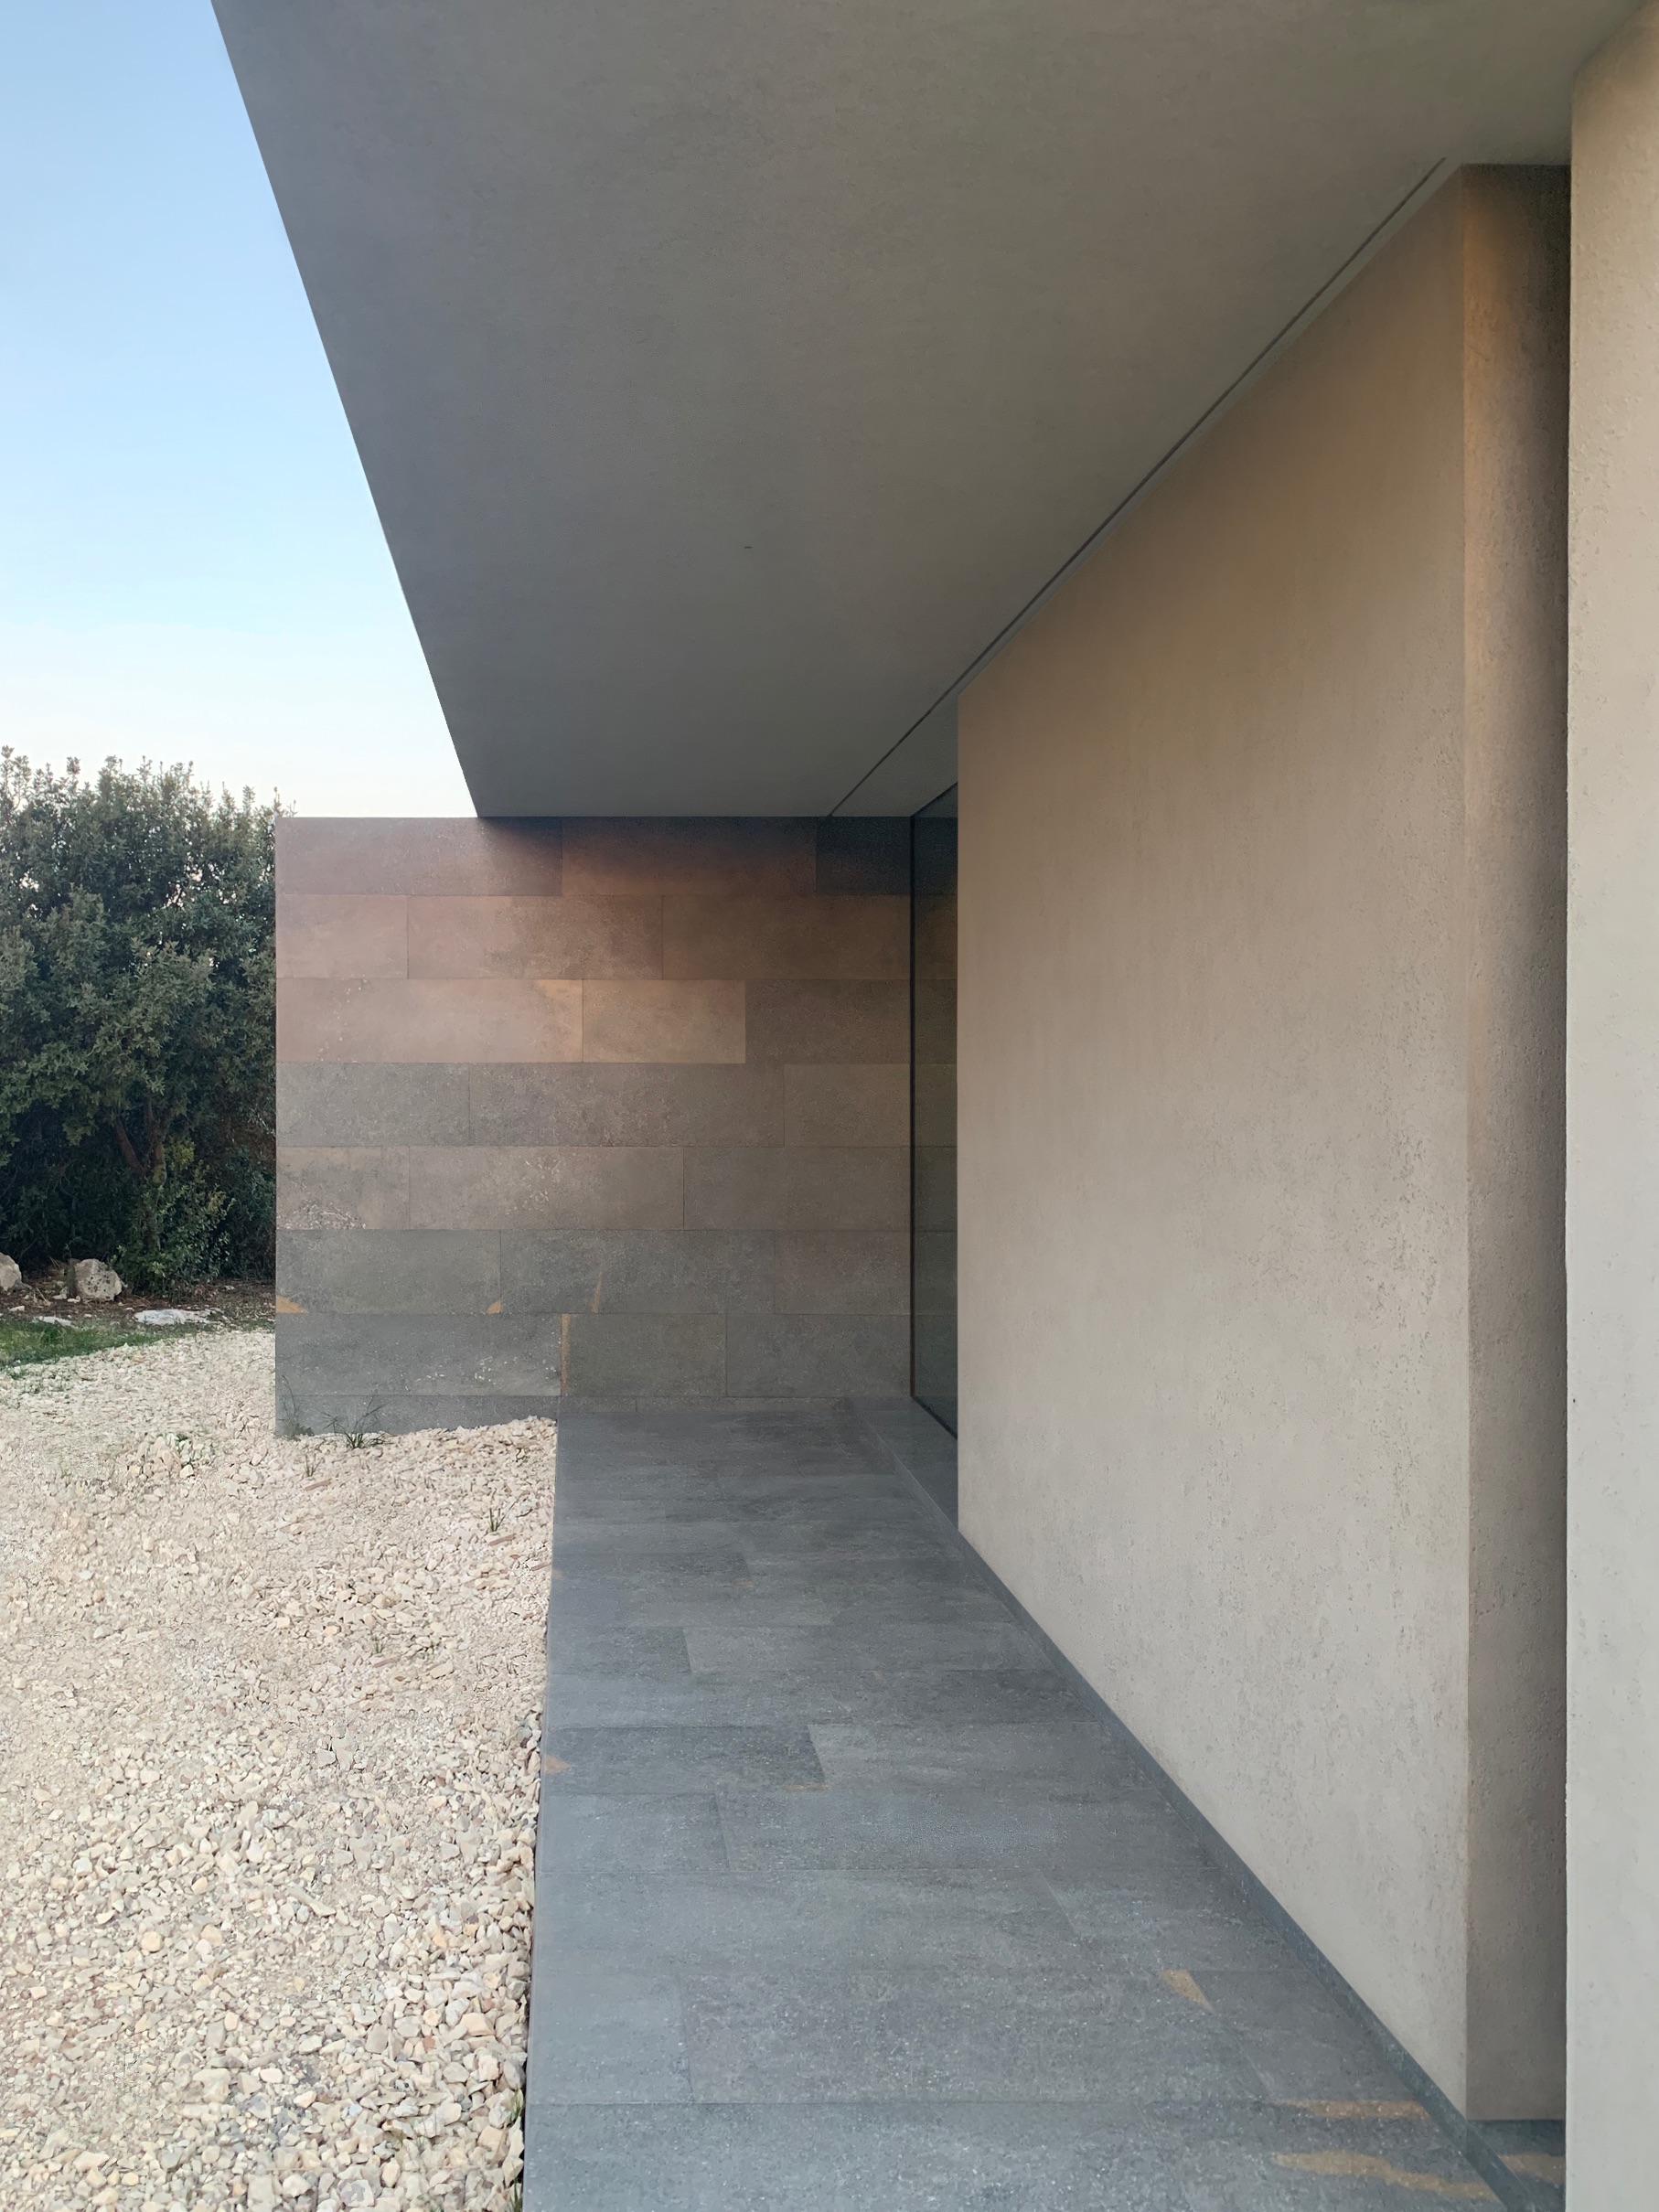 Villa delle rocce - Siracusa - Italy | 2016 - 2019